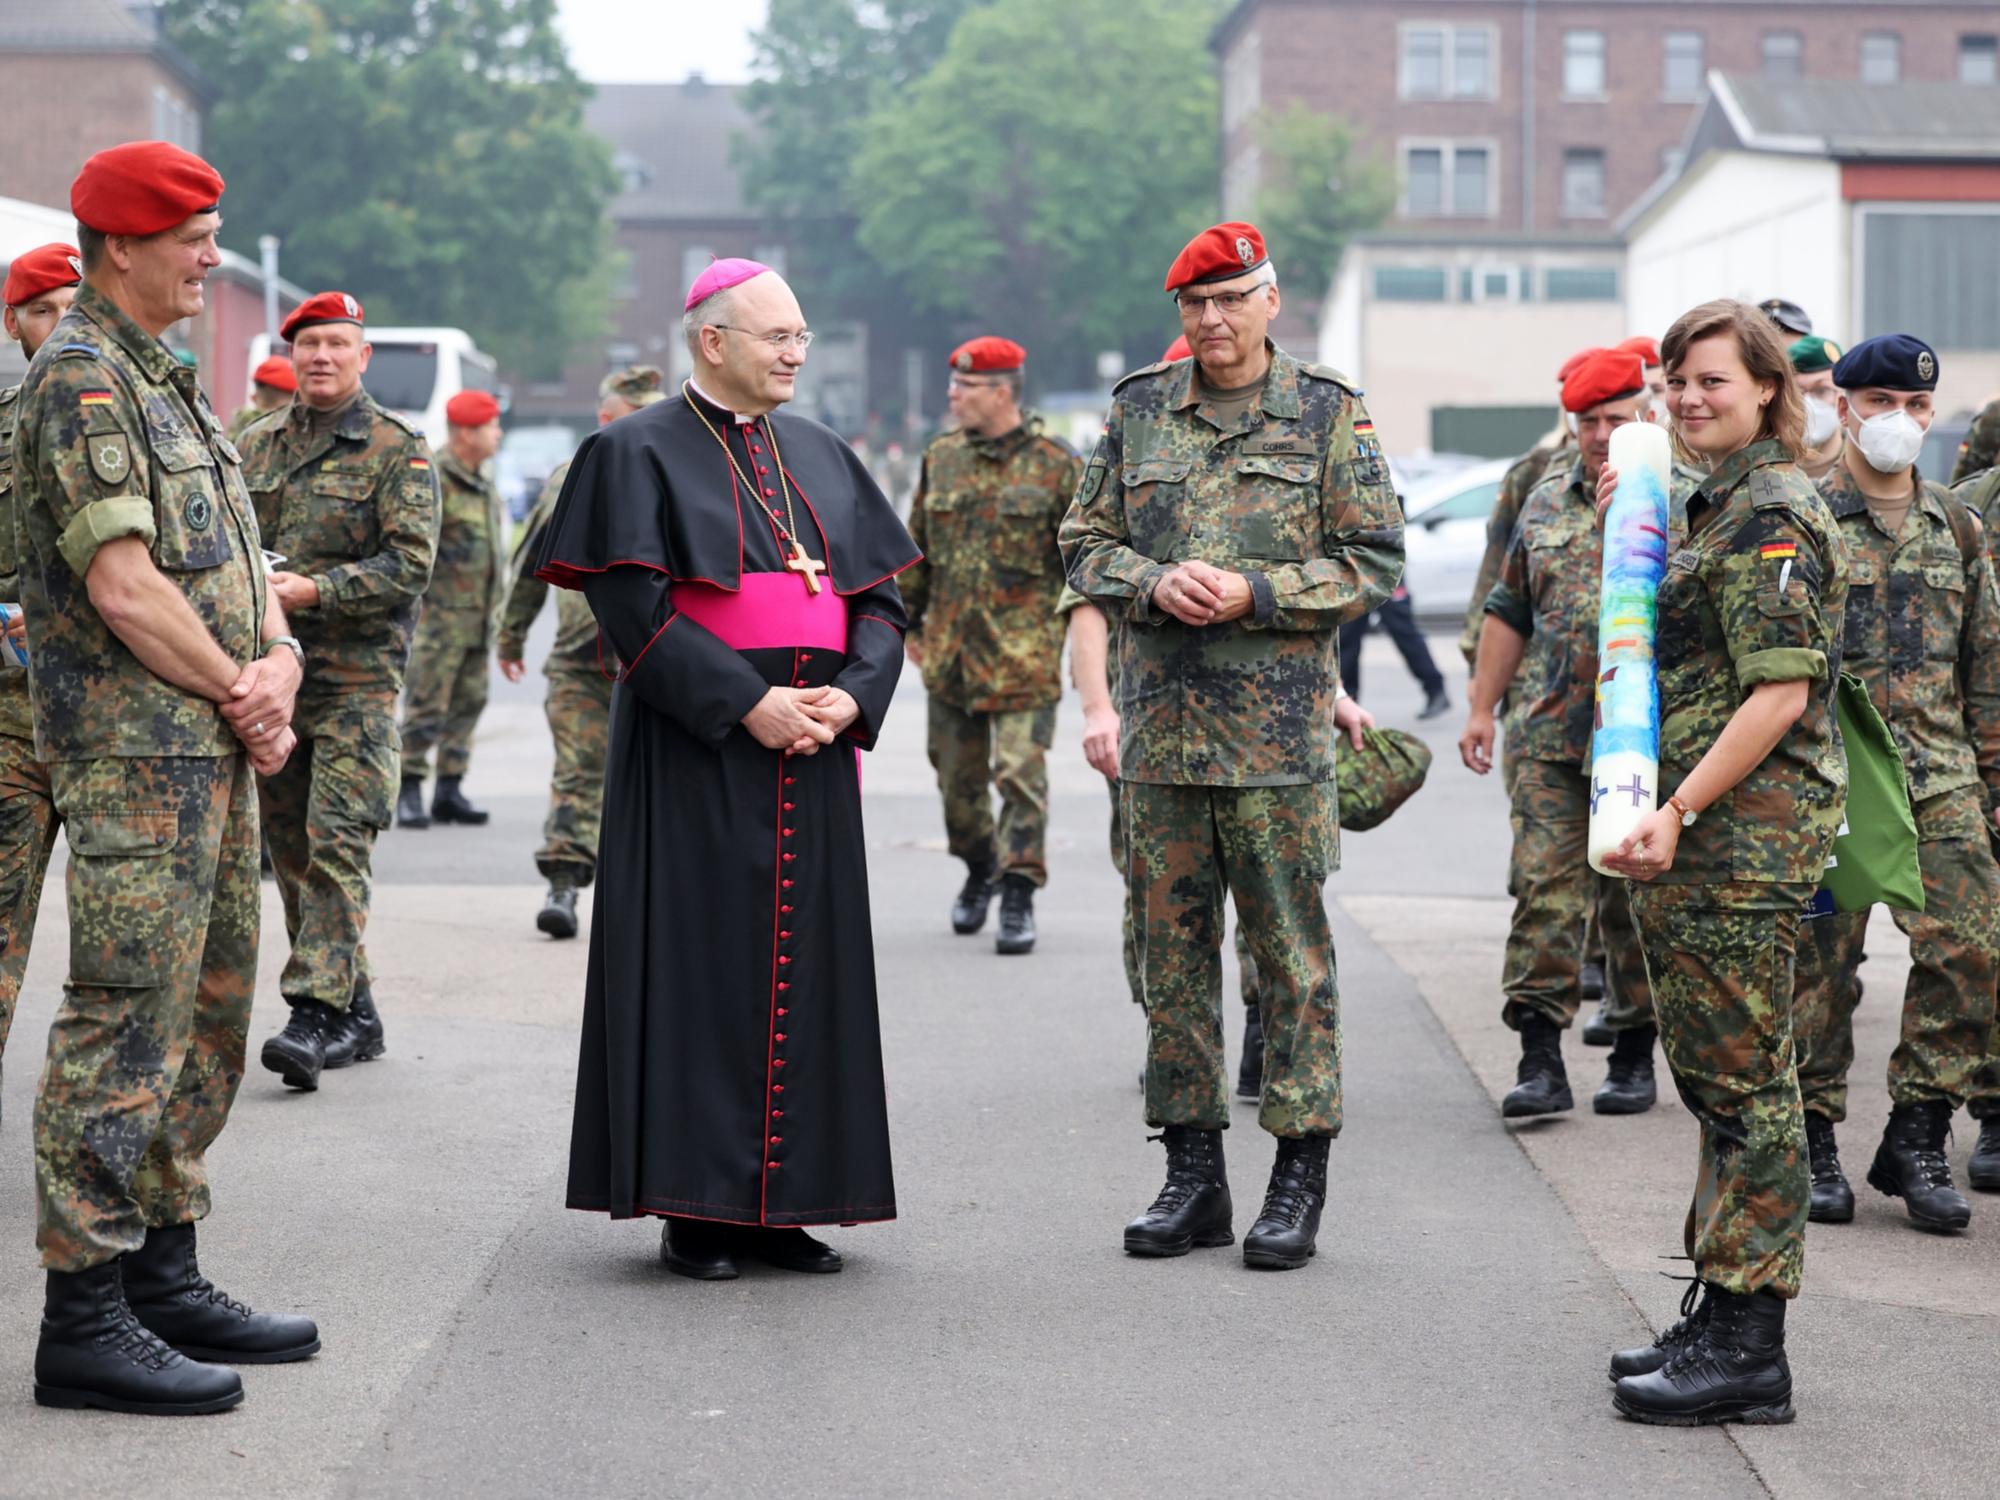 Friedensgottesdienst mit 300 Soldatinnen und Soldaten in der Lützow-Kaserne